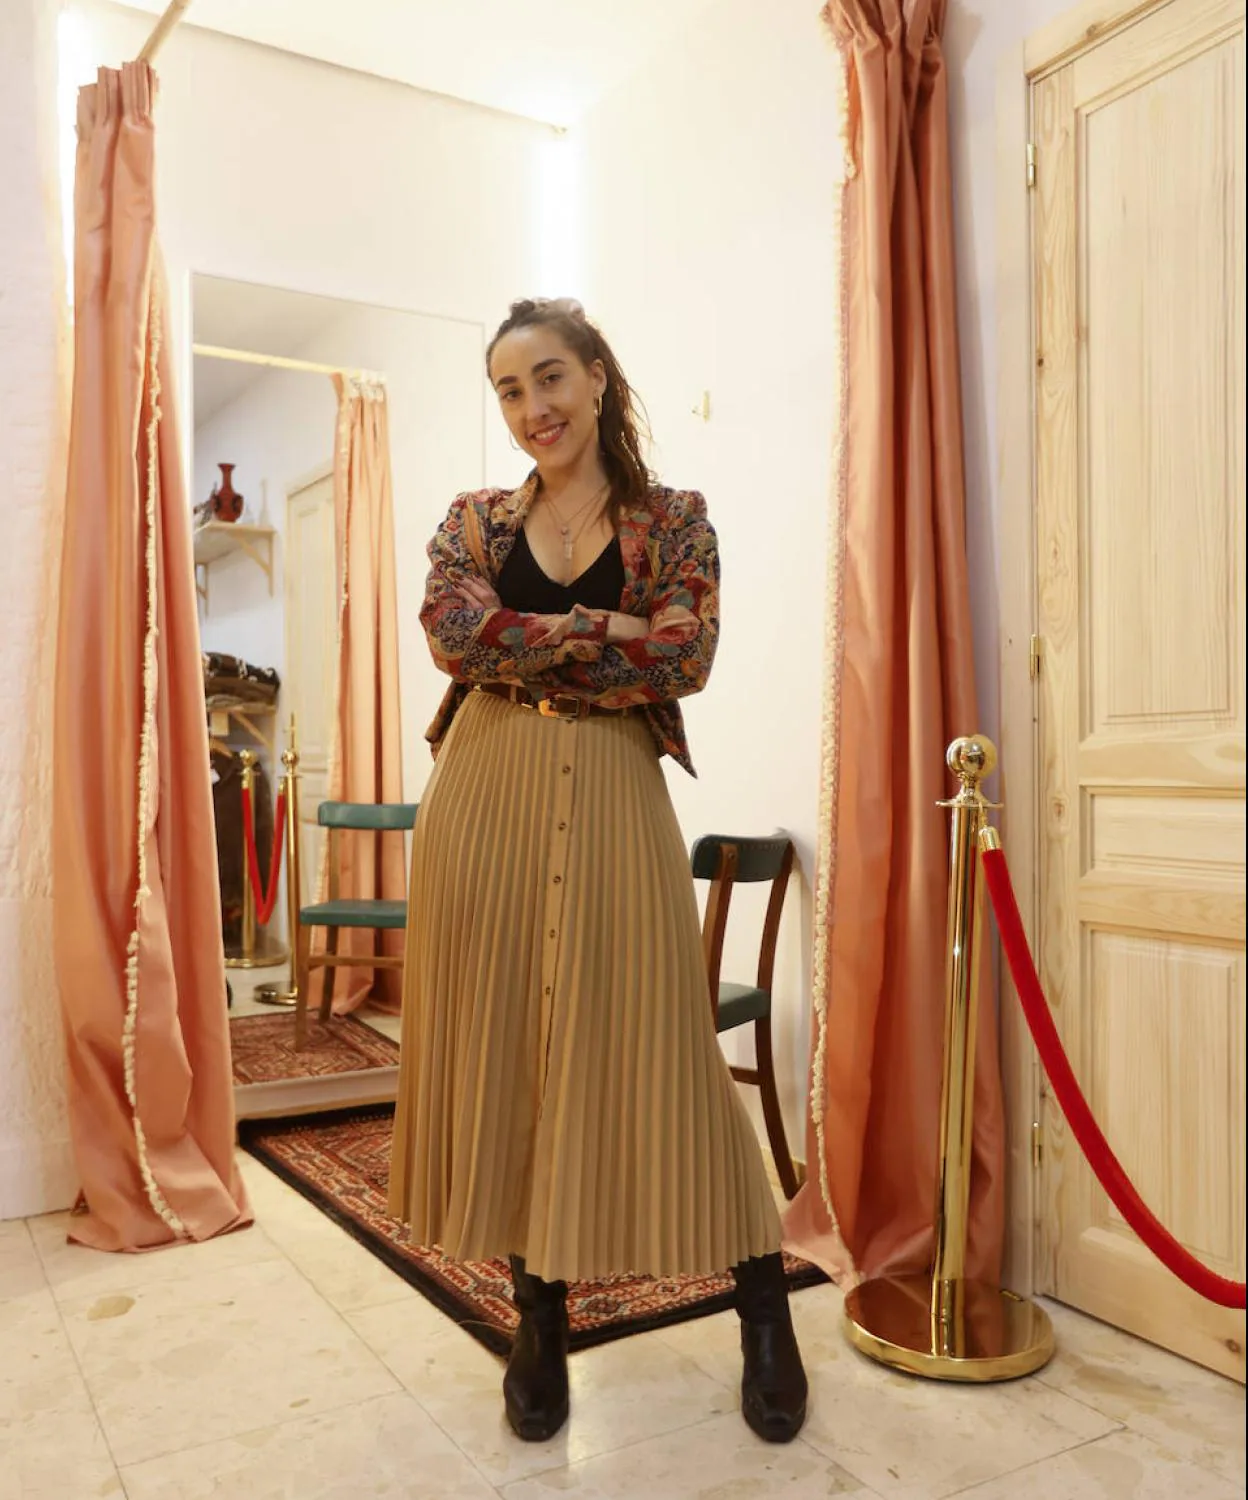 Tiendas en Bilbao (ropa 'vintage'): Mara, la creadora abre segunda tienda de ropa 'vintage' en Bilbao | El Correo